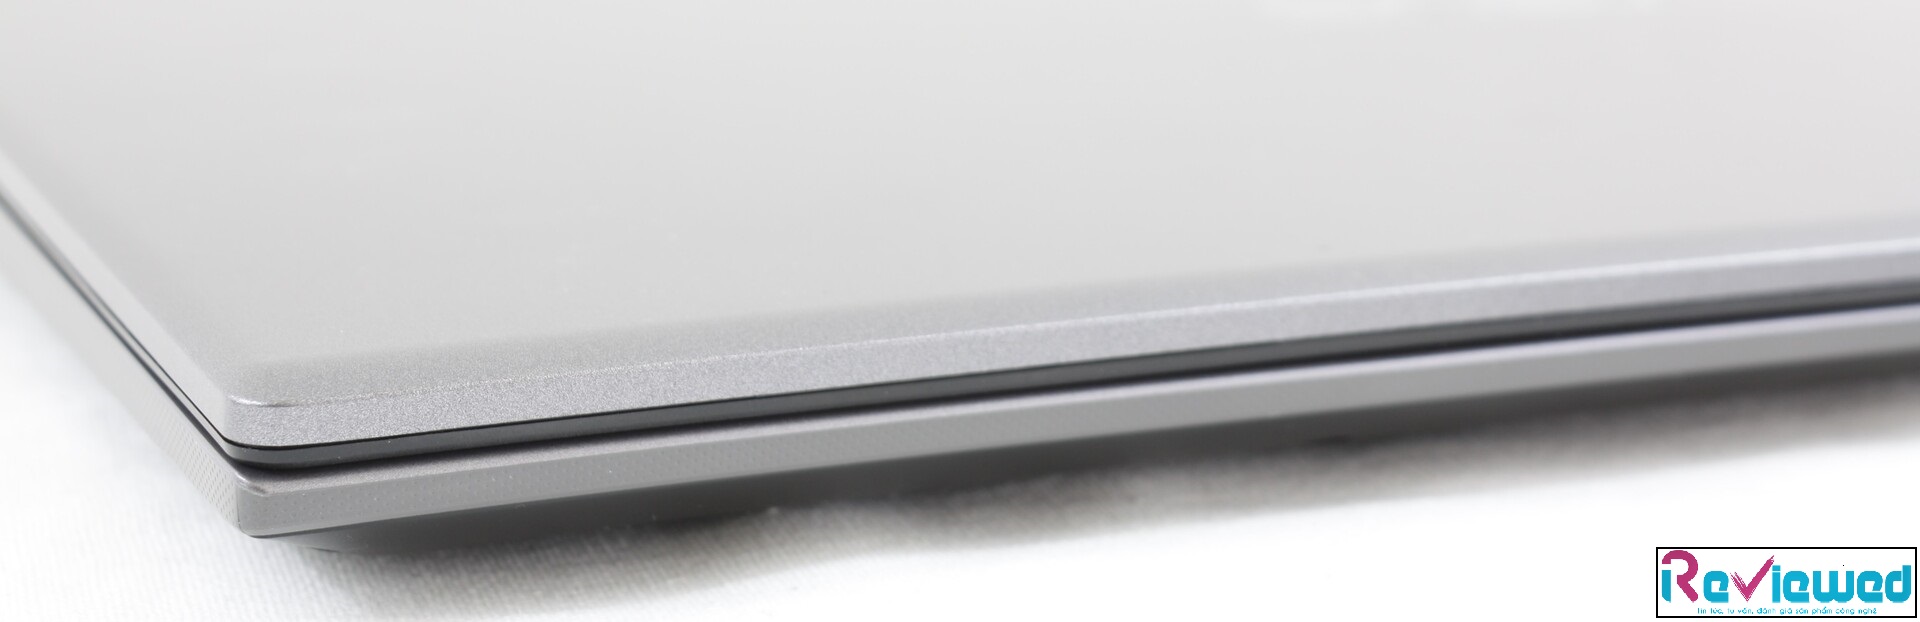 Đánh giá Asus Vivobook 15 F512DA: Notebook giá rẻ, hiệu năng cao, Chuyên trang tư vấn Laptop